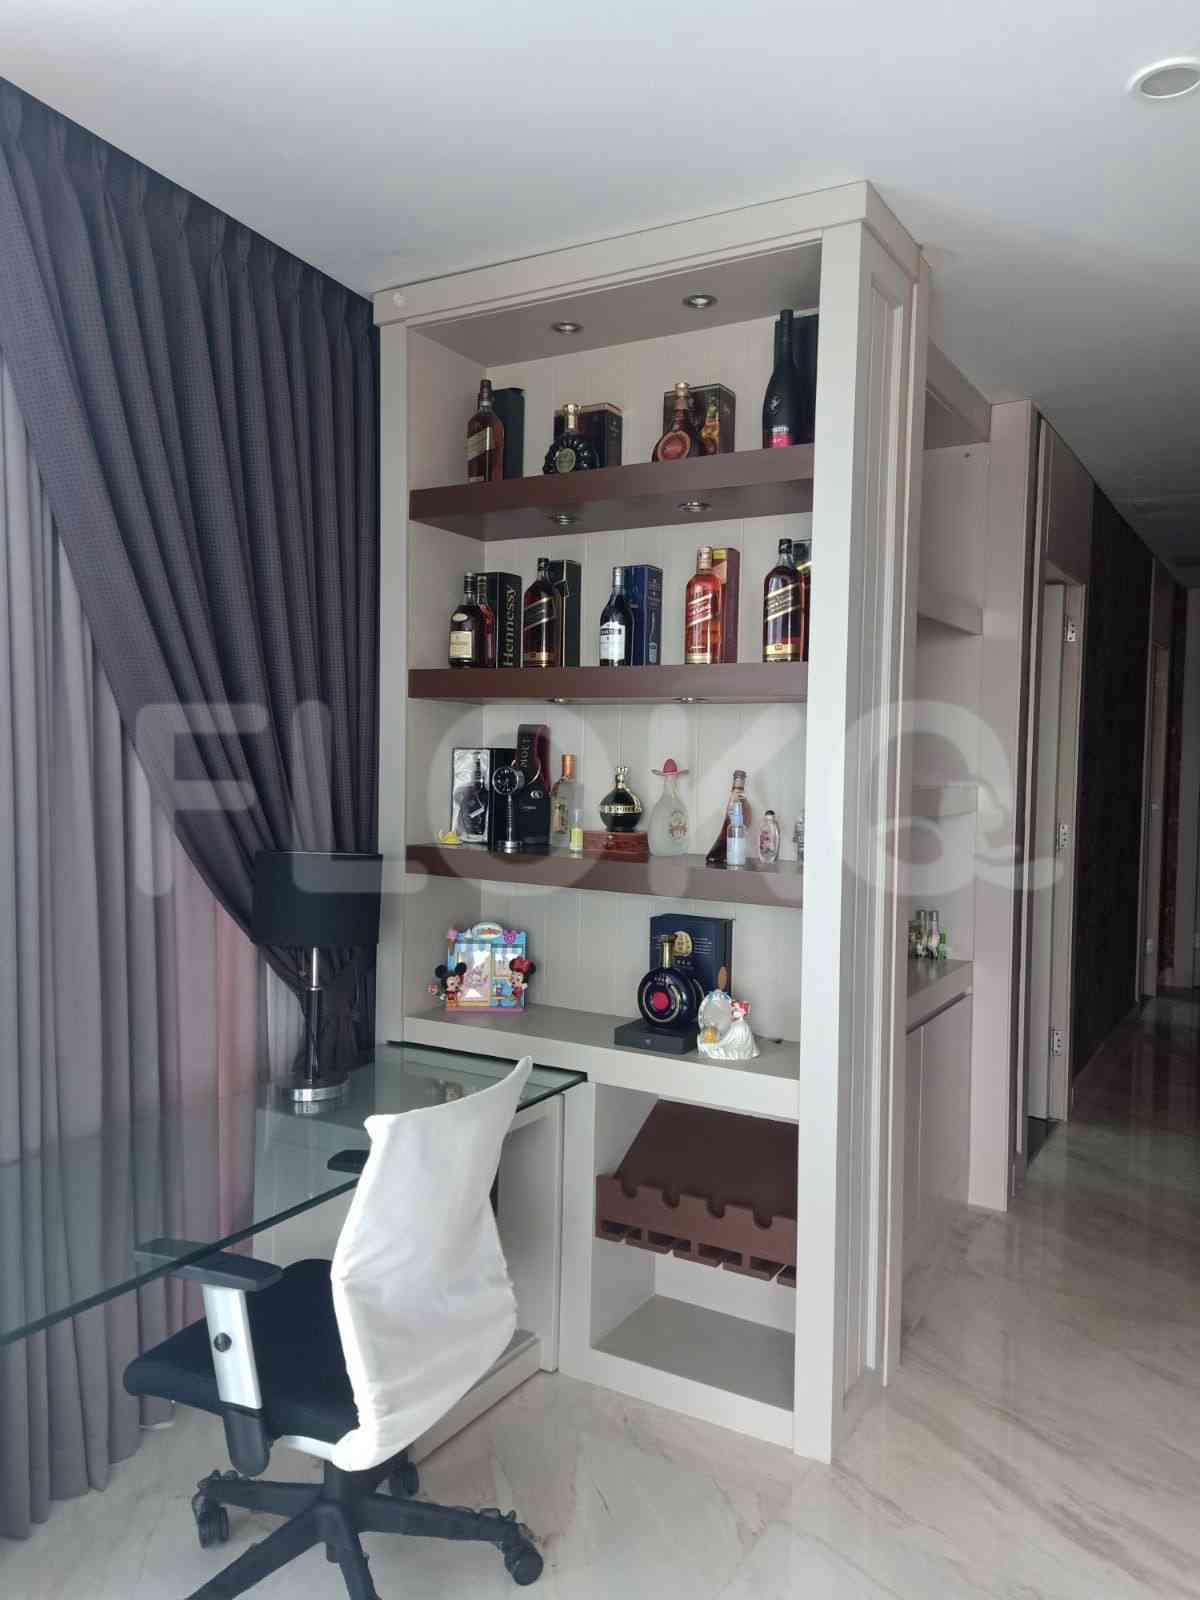 3 Bedroom on 16th Floor for Rent in Regatta - fpl795 7